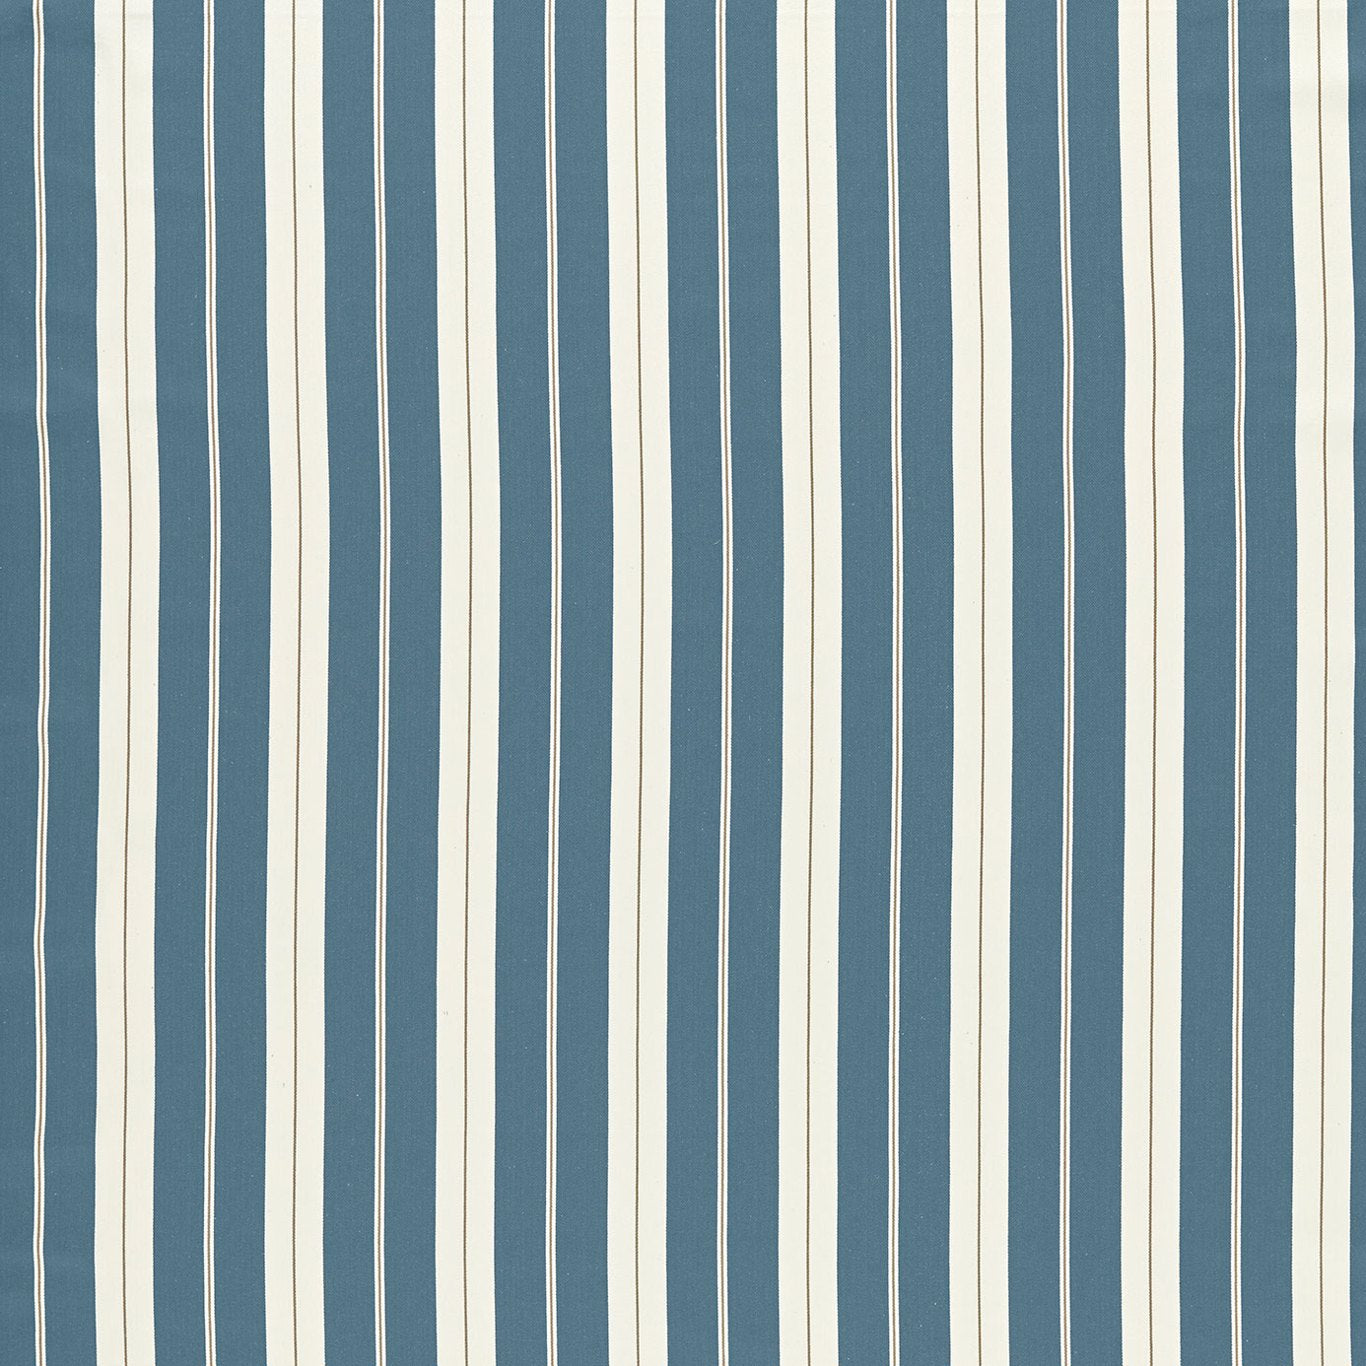 Belgravia Fabric by Clarke & Clarke - F1497/02 - Denim/Linen